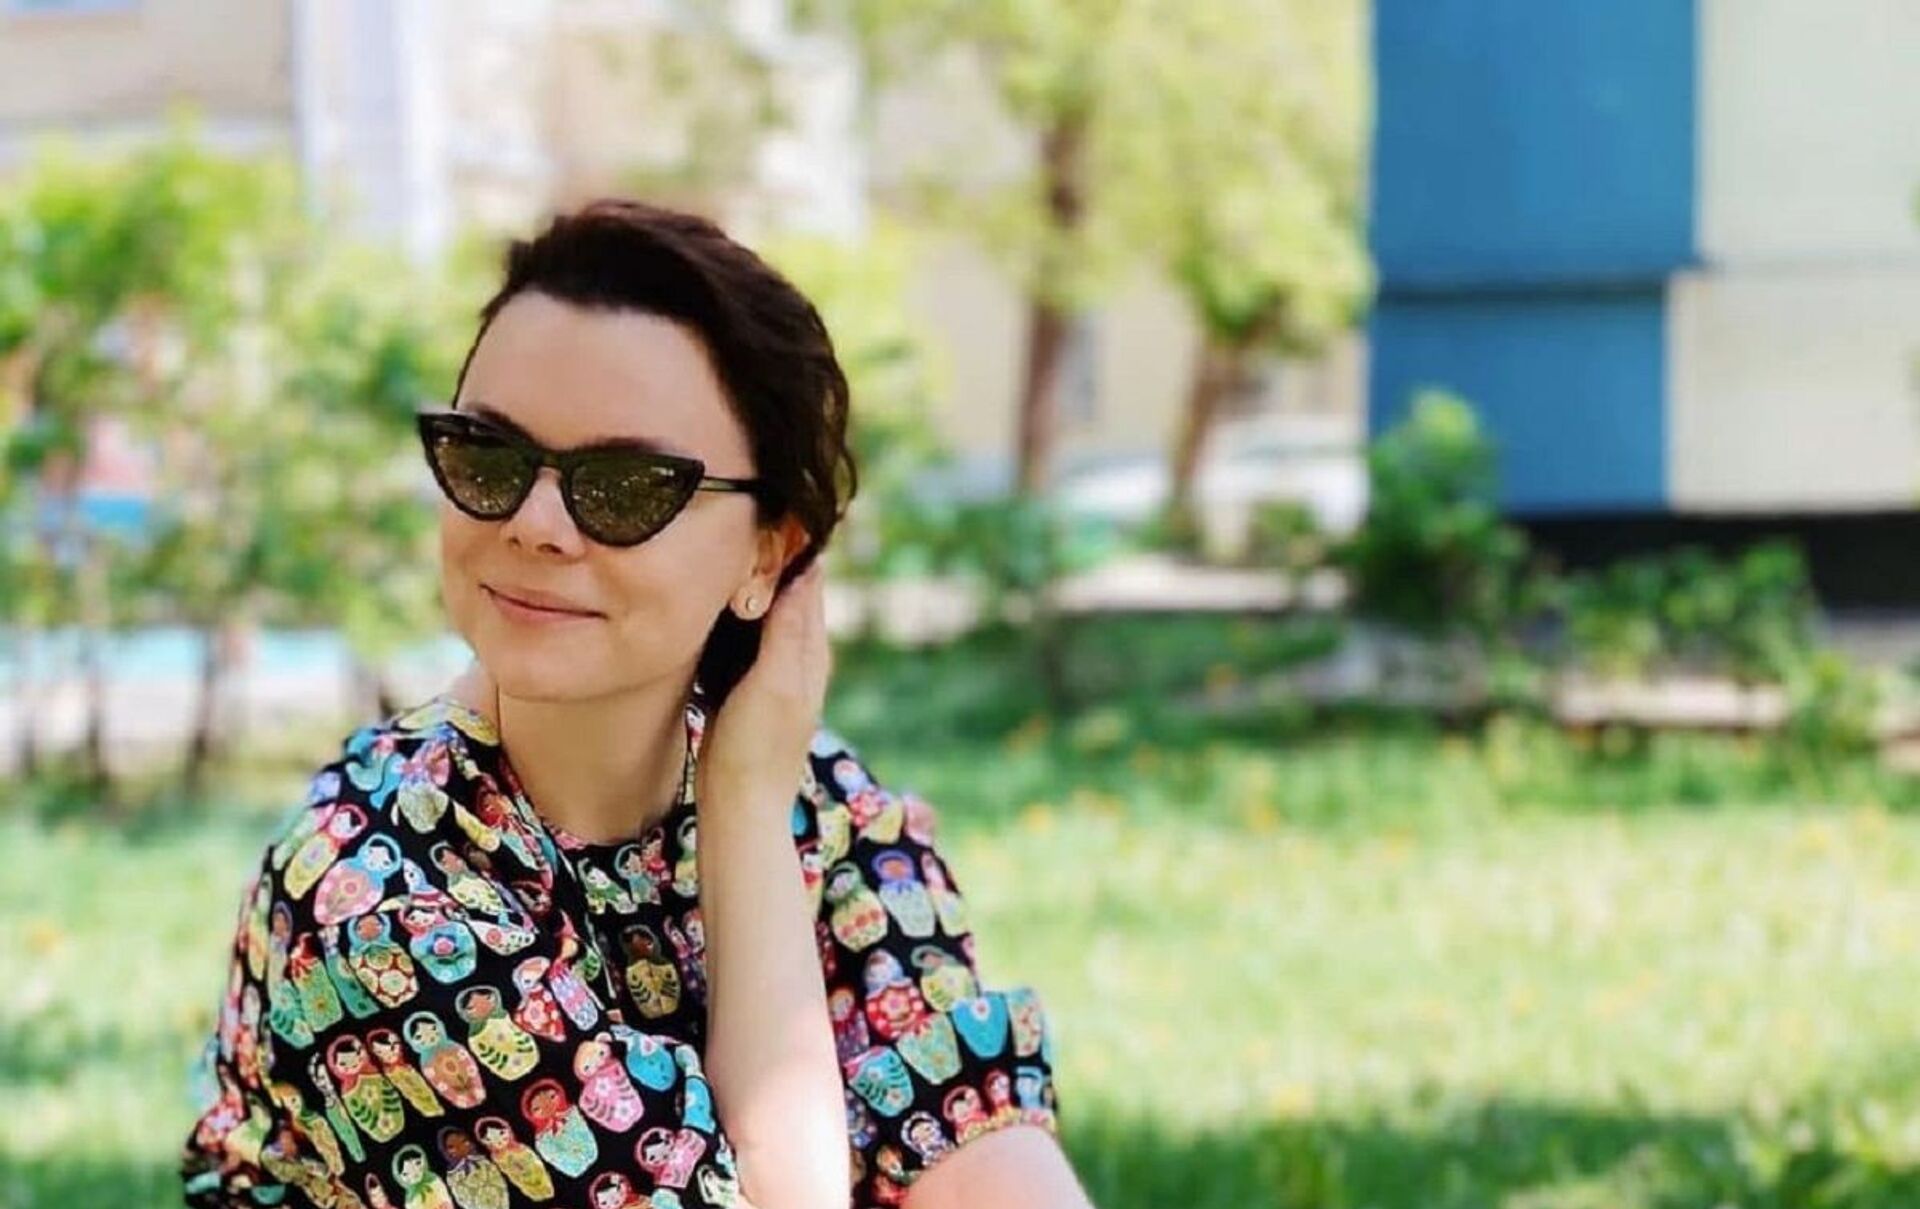 Копия Боярской!: Жена Петросяна сделала красивую фотосессию, она оказывается красивая женщина